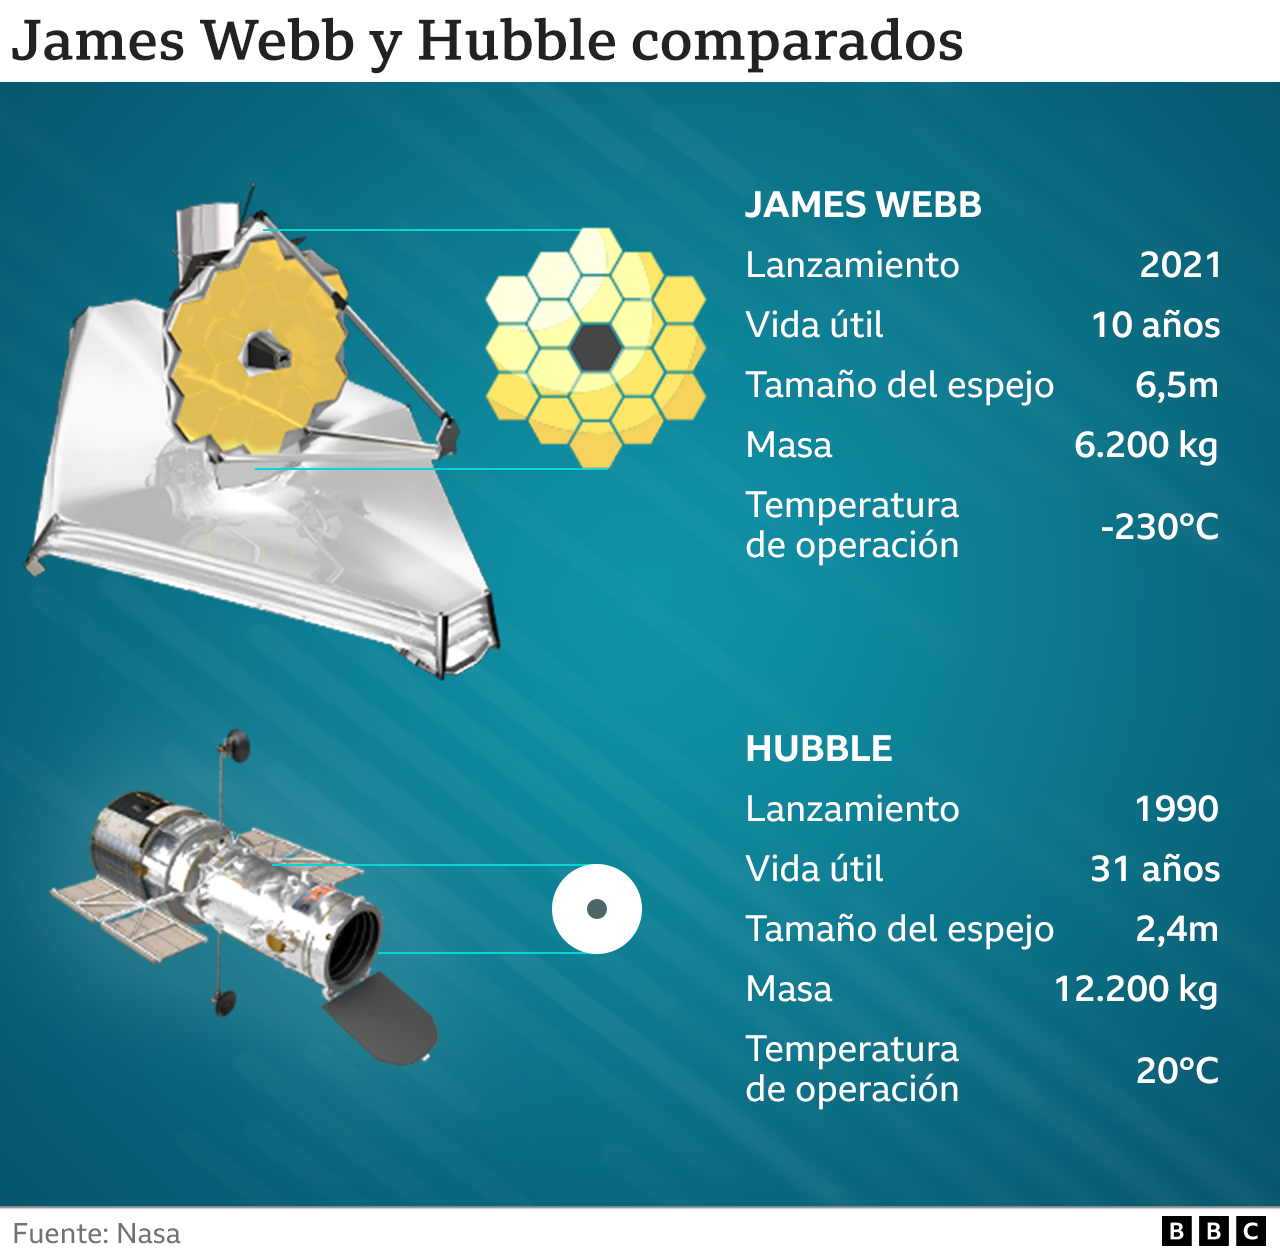 Una comparación entre el telescopio James Webb y el telescopio Hubble